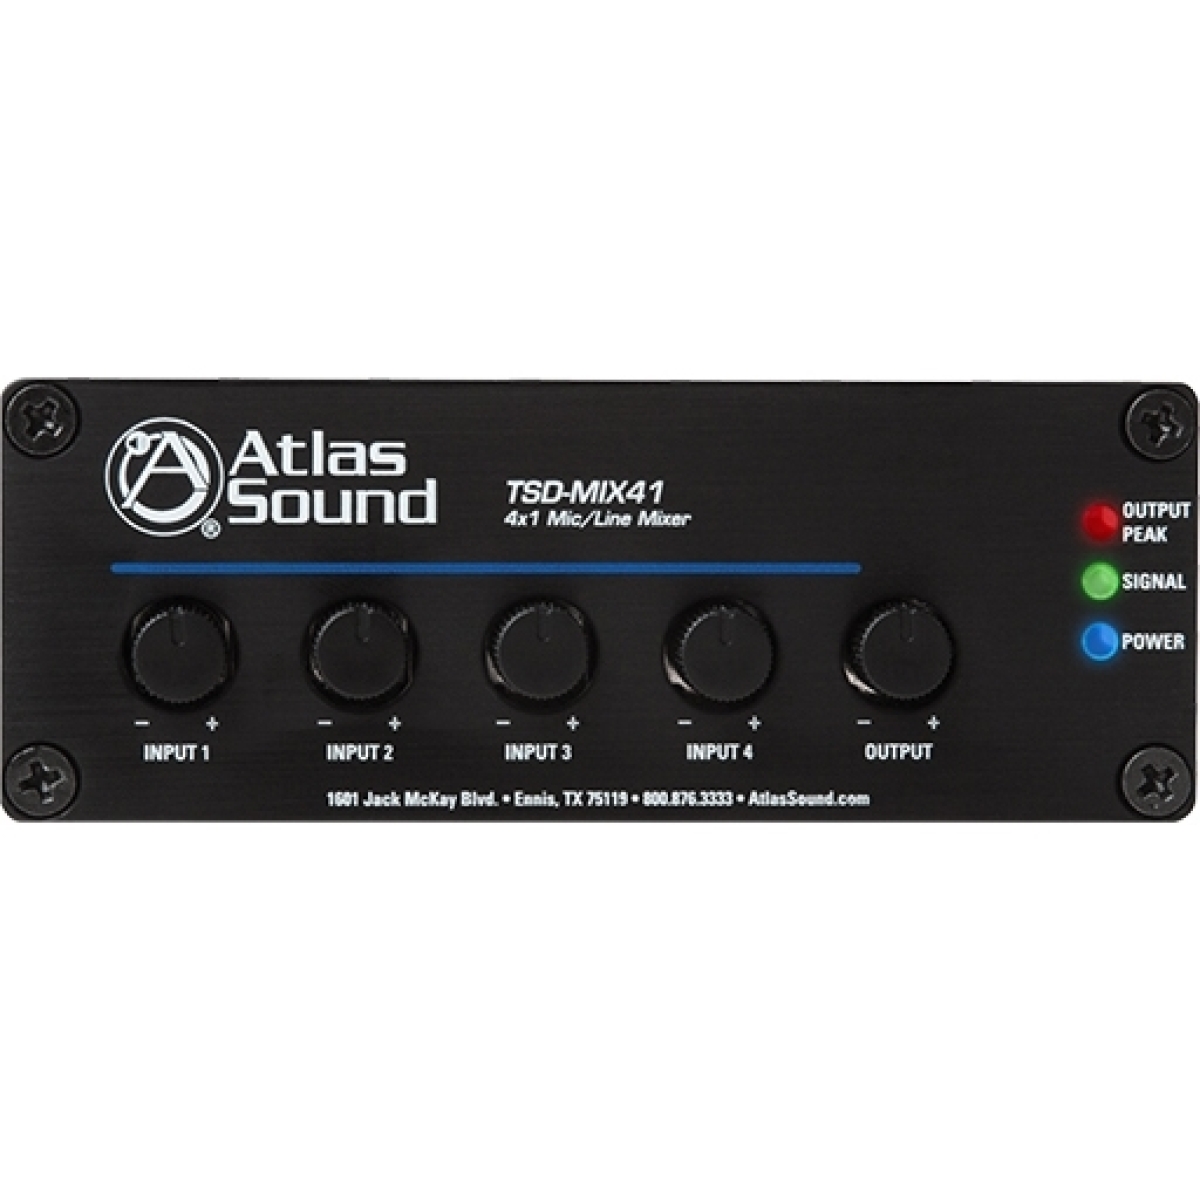 Line mix. Микшер Tsd-mix41 Atlas Sound. Atlas IED Tsd-mix41. Двухканальный микшер. Микшерный пульт с кнопкой фантомного питания.